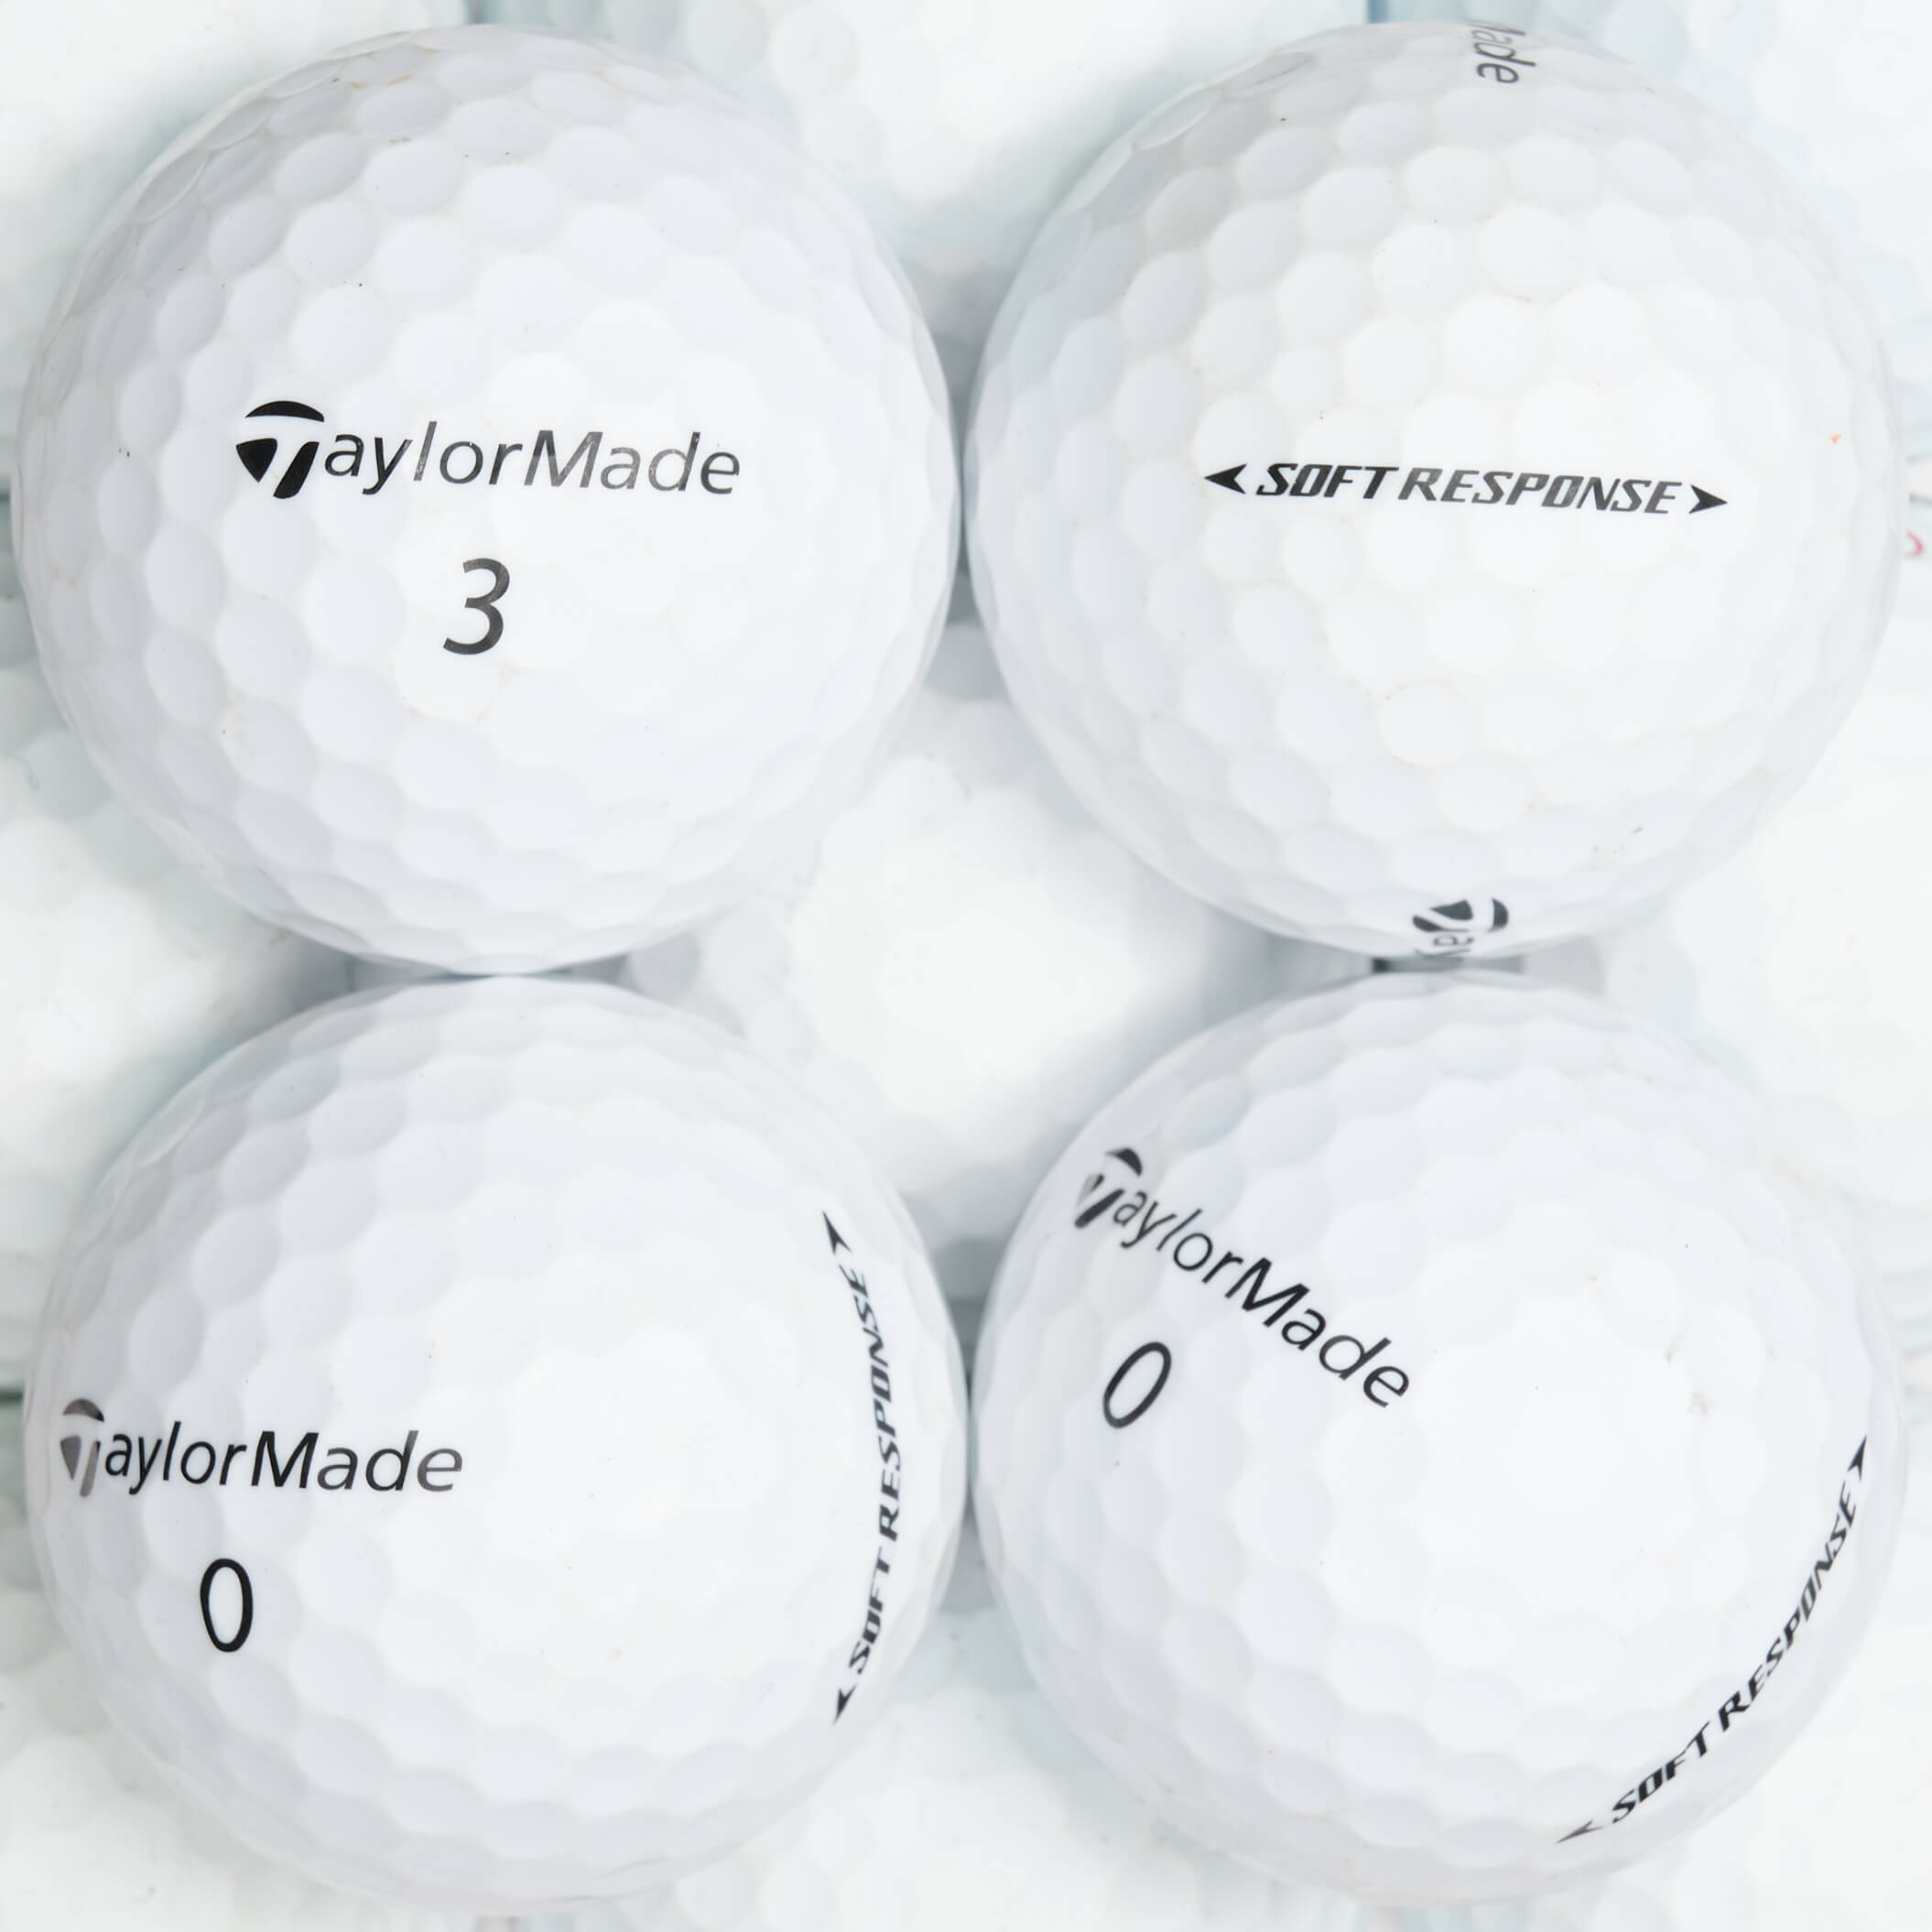 25 TaylorMade Soft Response Lakeballs, white